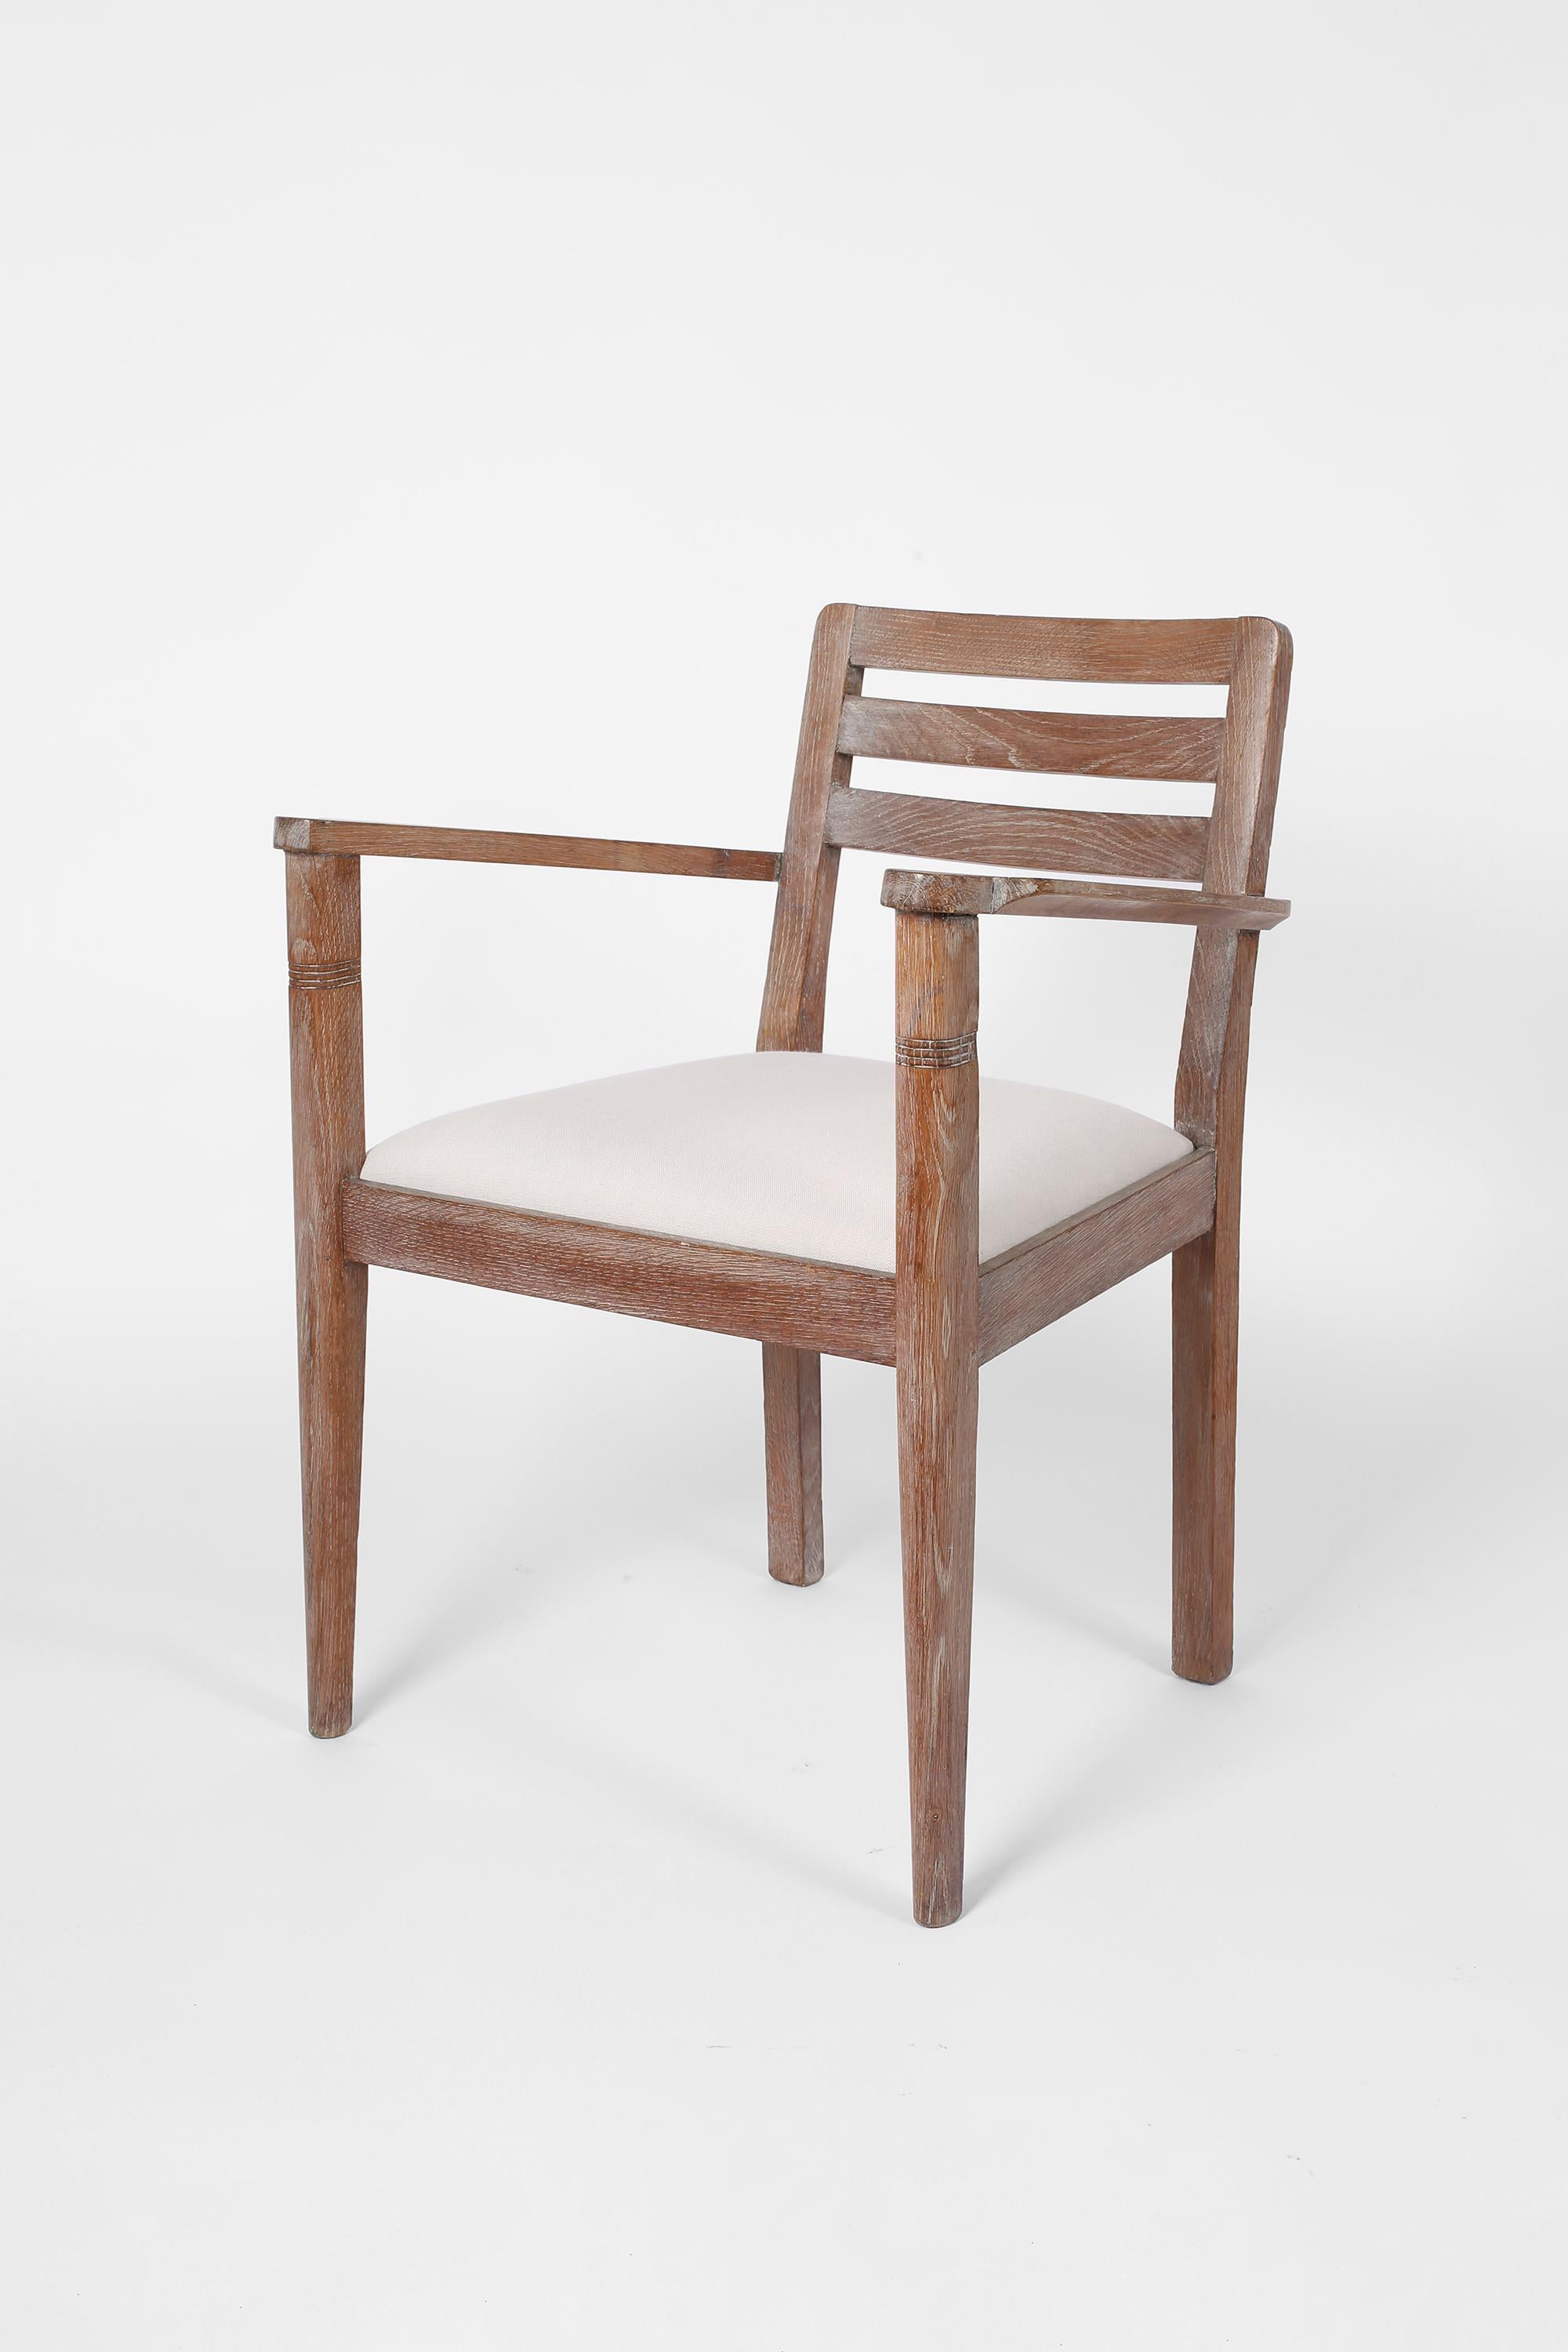 Une paire de fauteuils Art Déco en chêne chaulé, avec des sièges tapissés en lin blanc cassé texturé. Français, vers les années 1930.